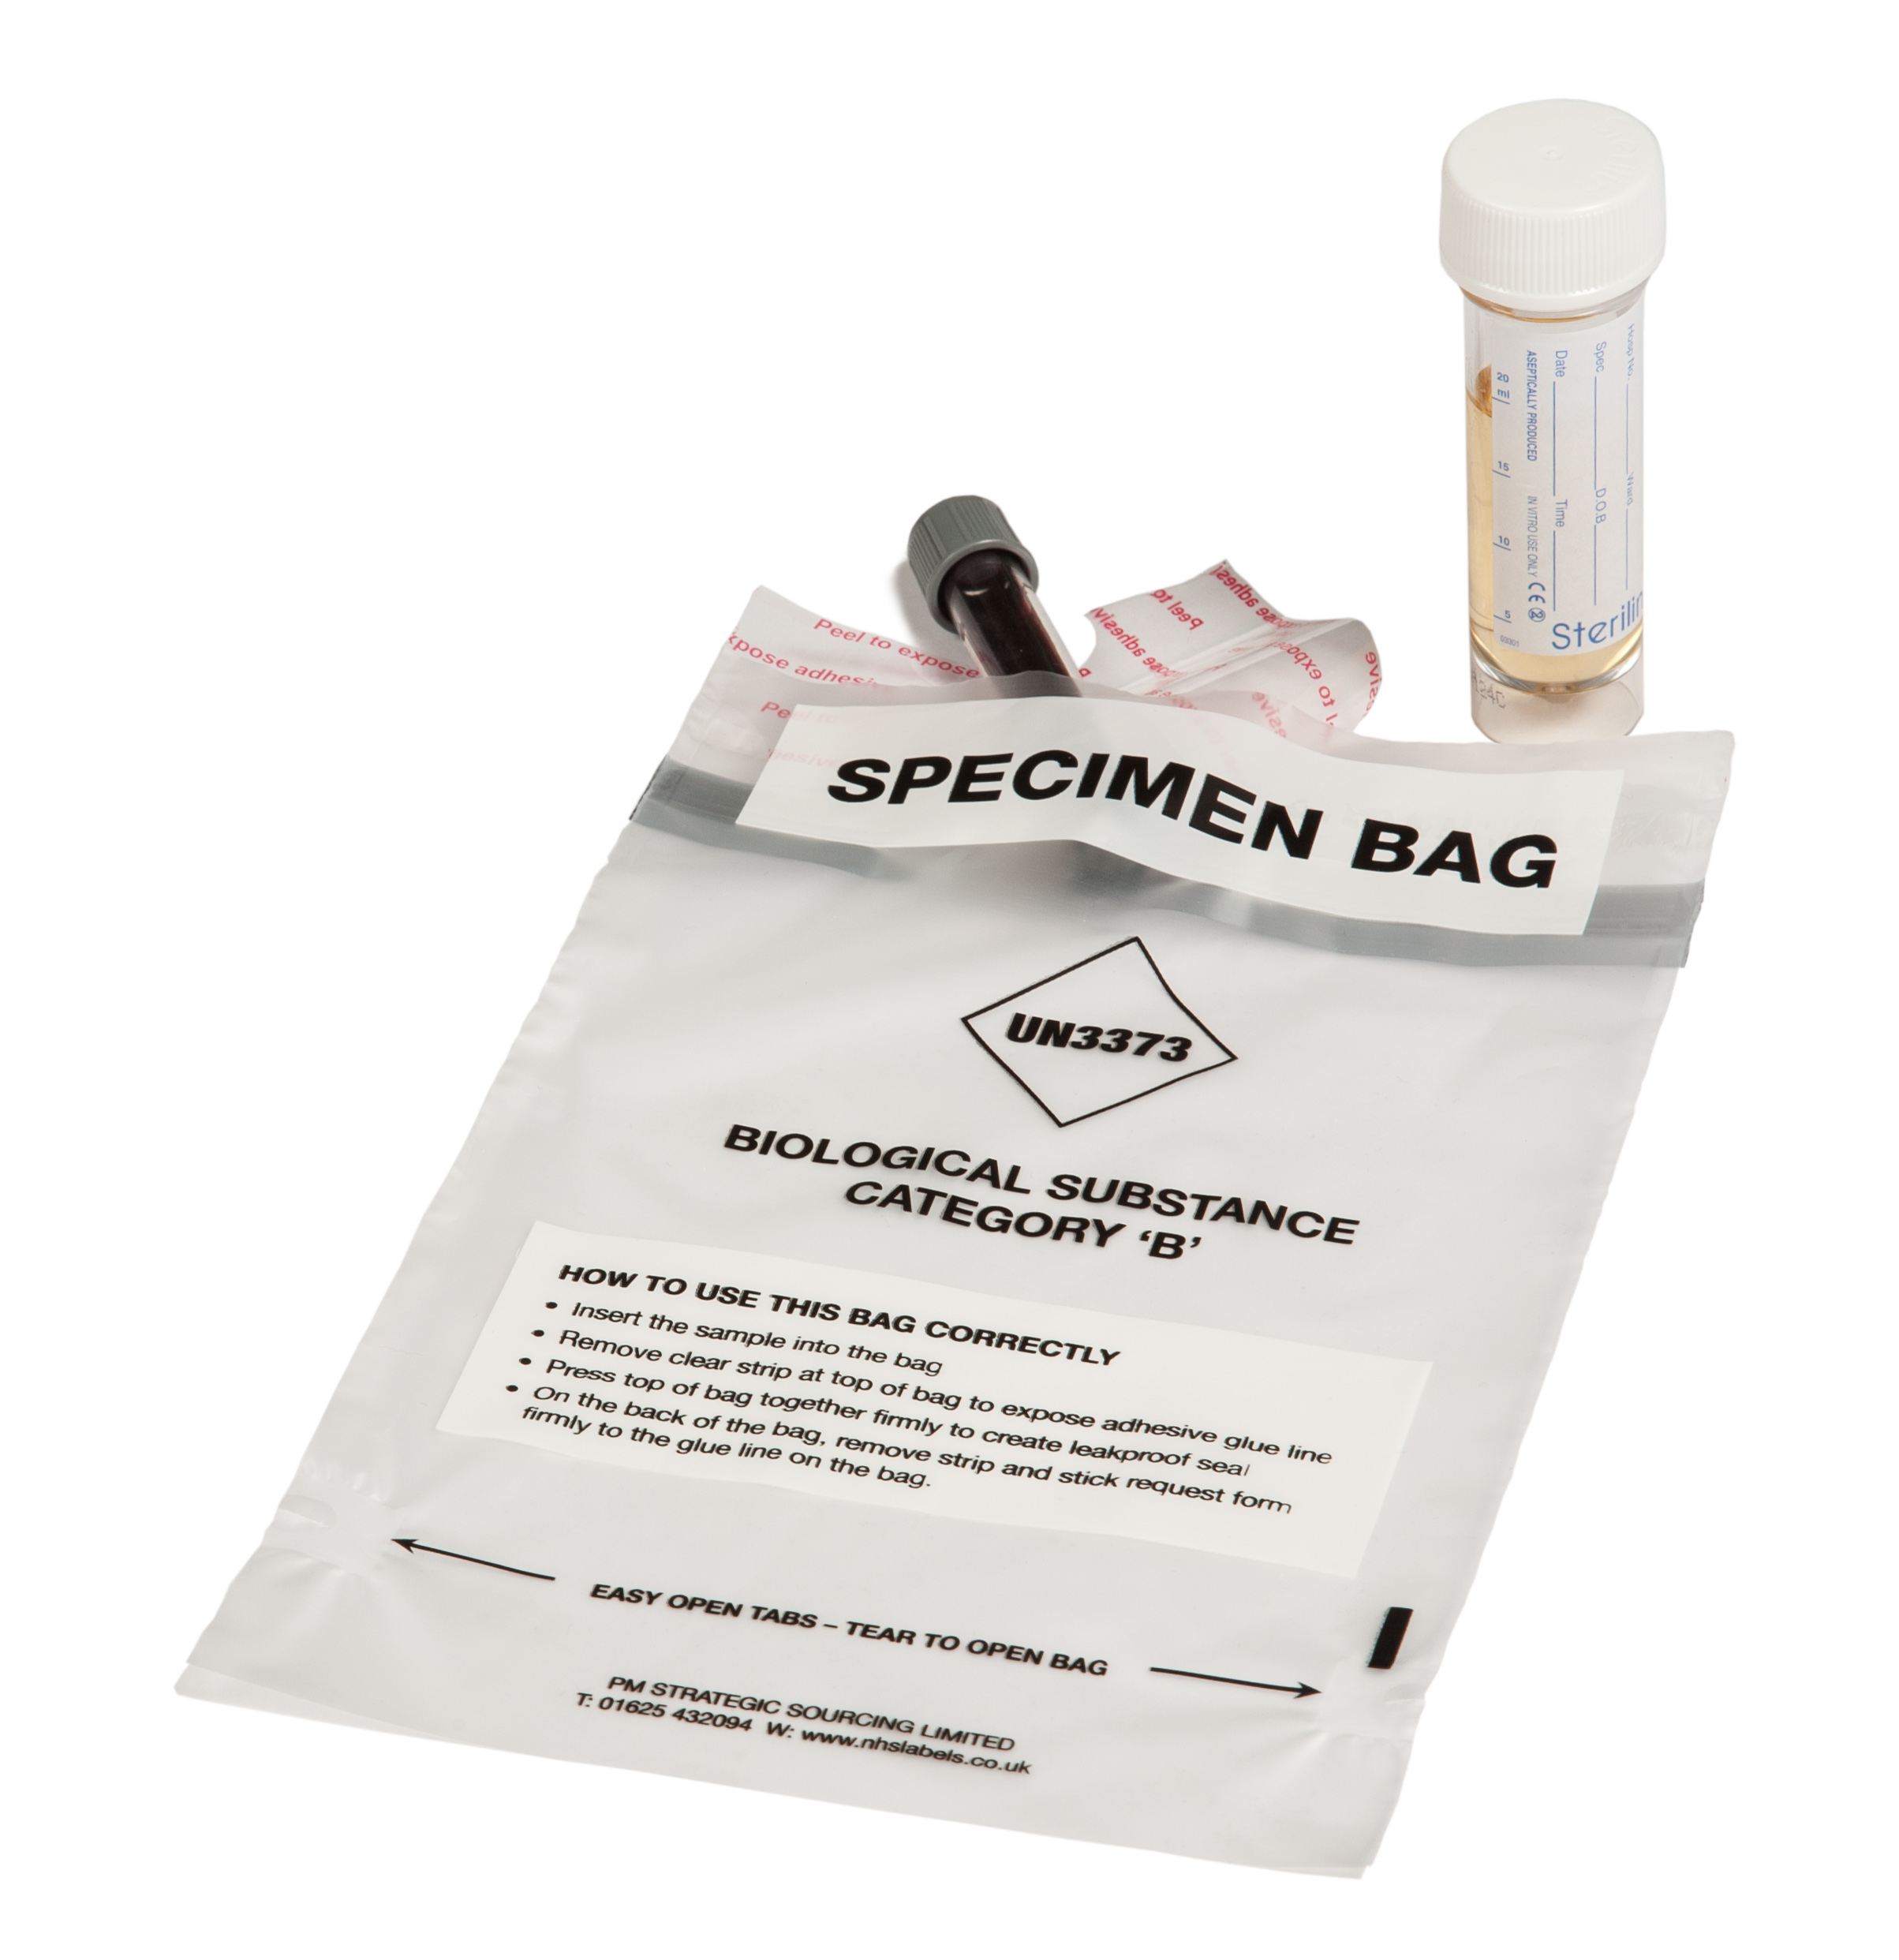 Gripseal Specimen Bag Category B